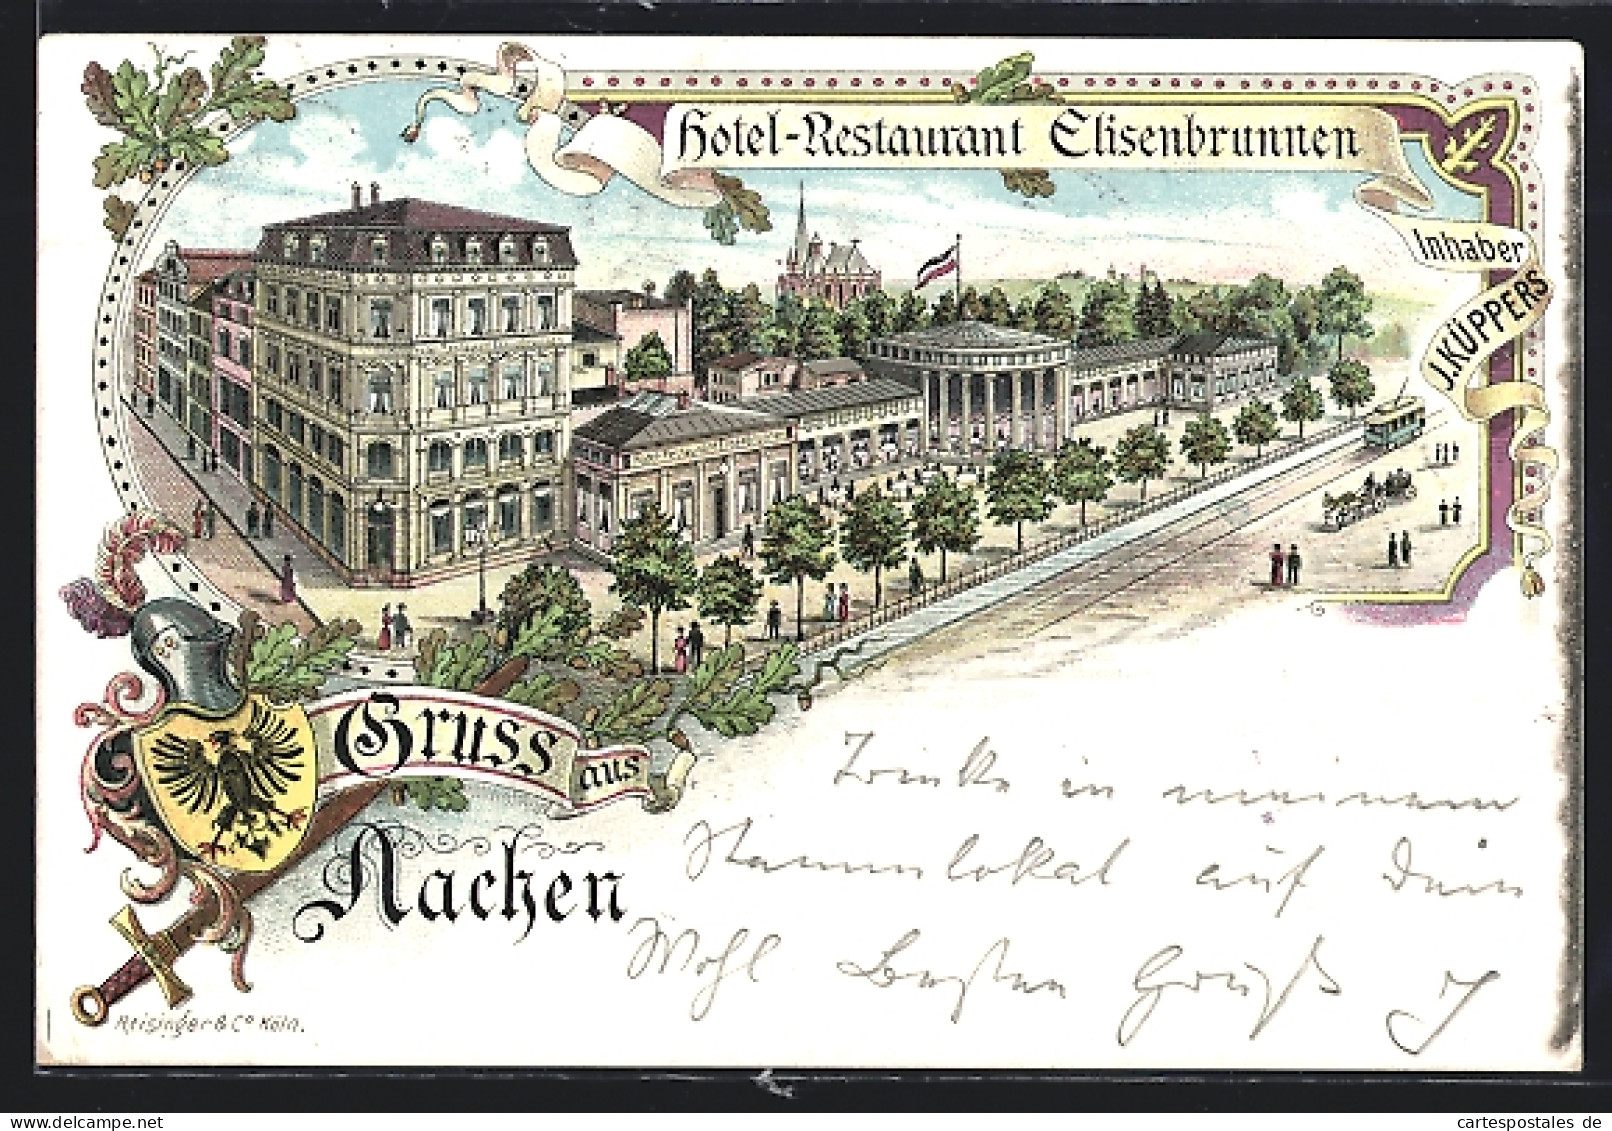 Lithographie Aachen, Hotel-Restaurant Elisenbrunnen, Strassenbahn  - Aachen